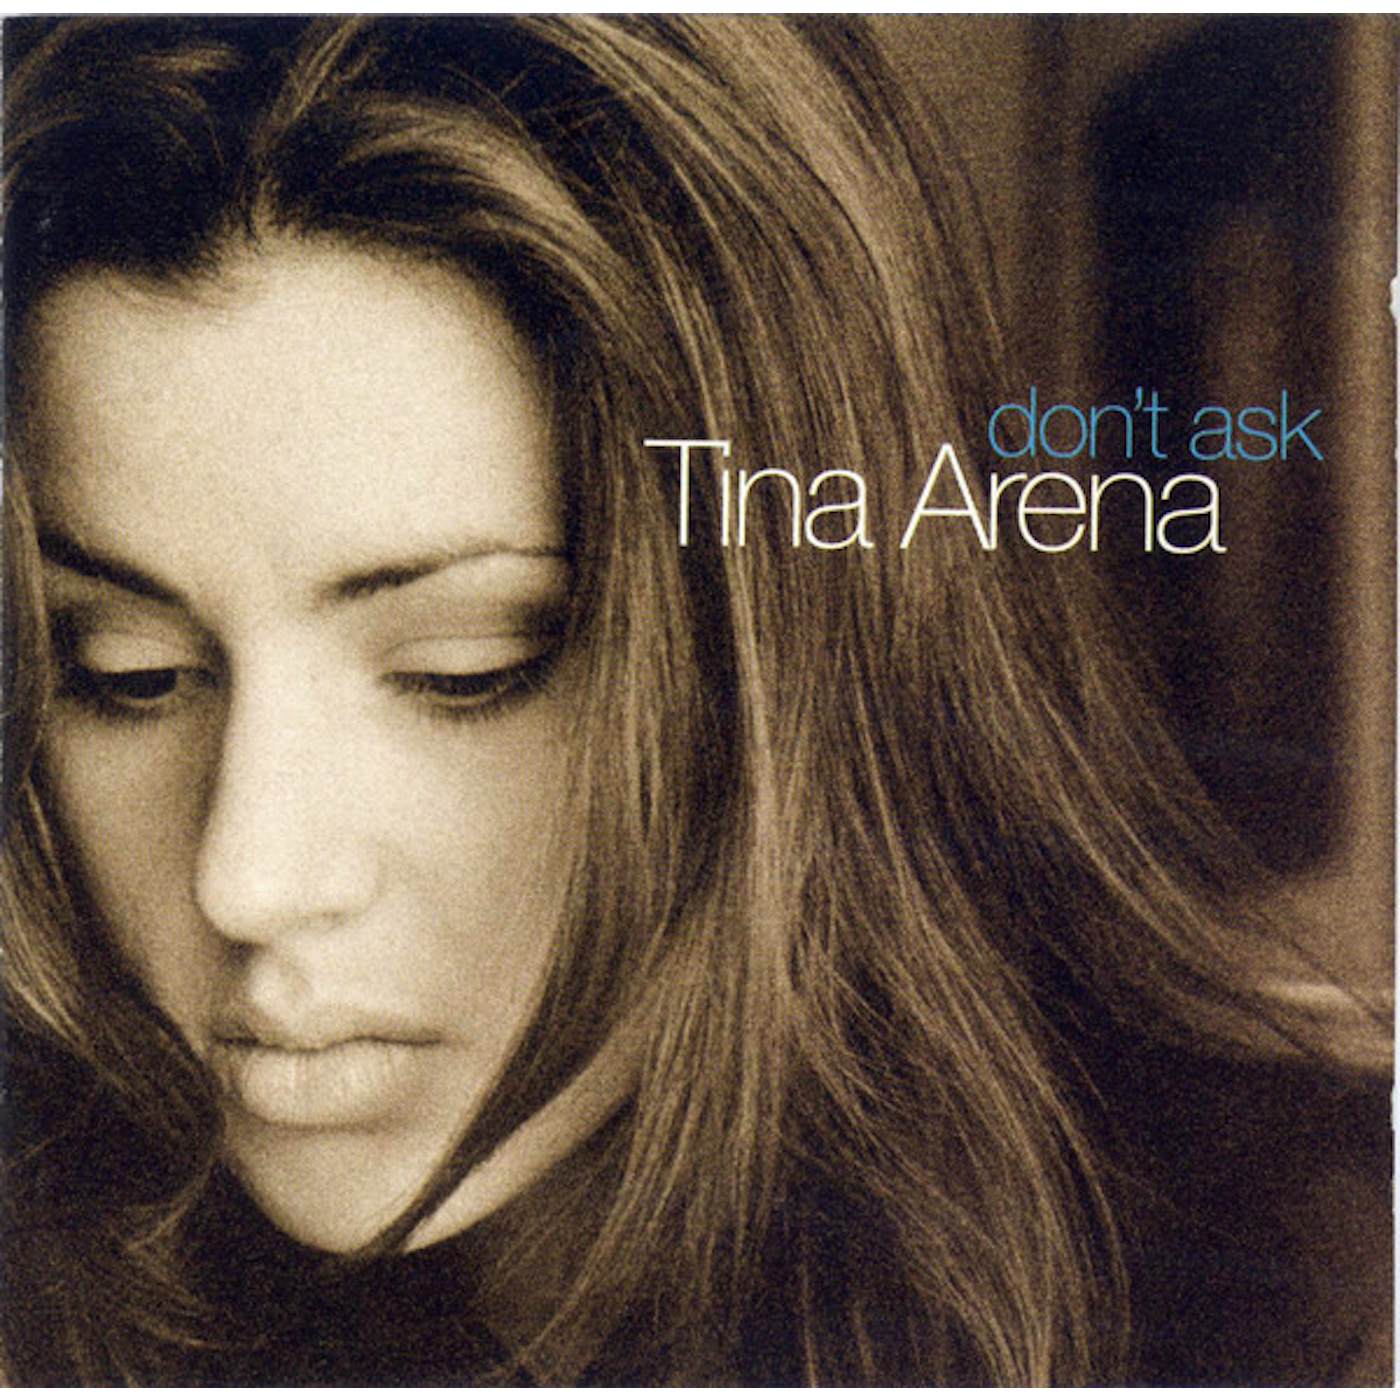 Tina Arena DON'T ASK CD